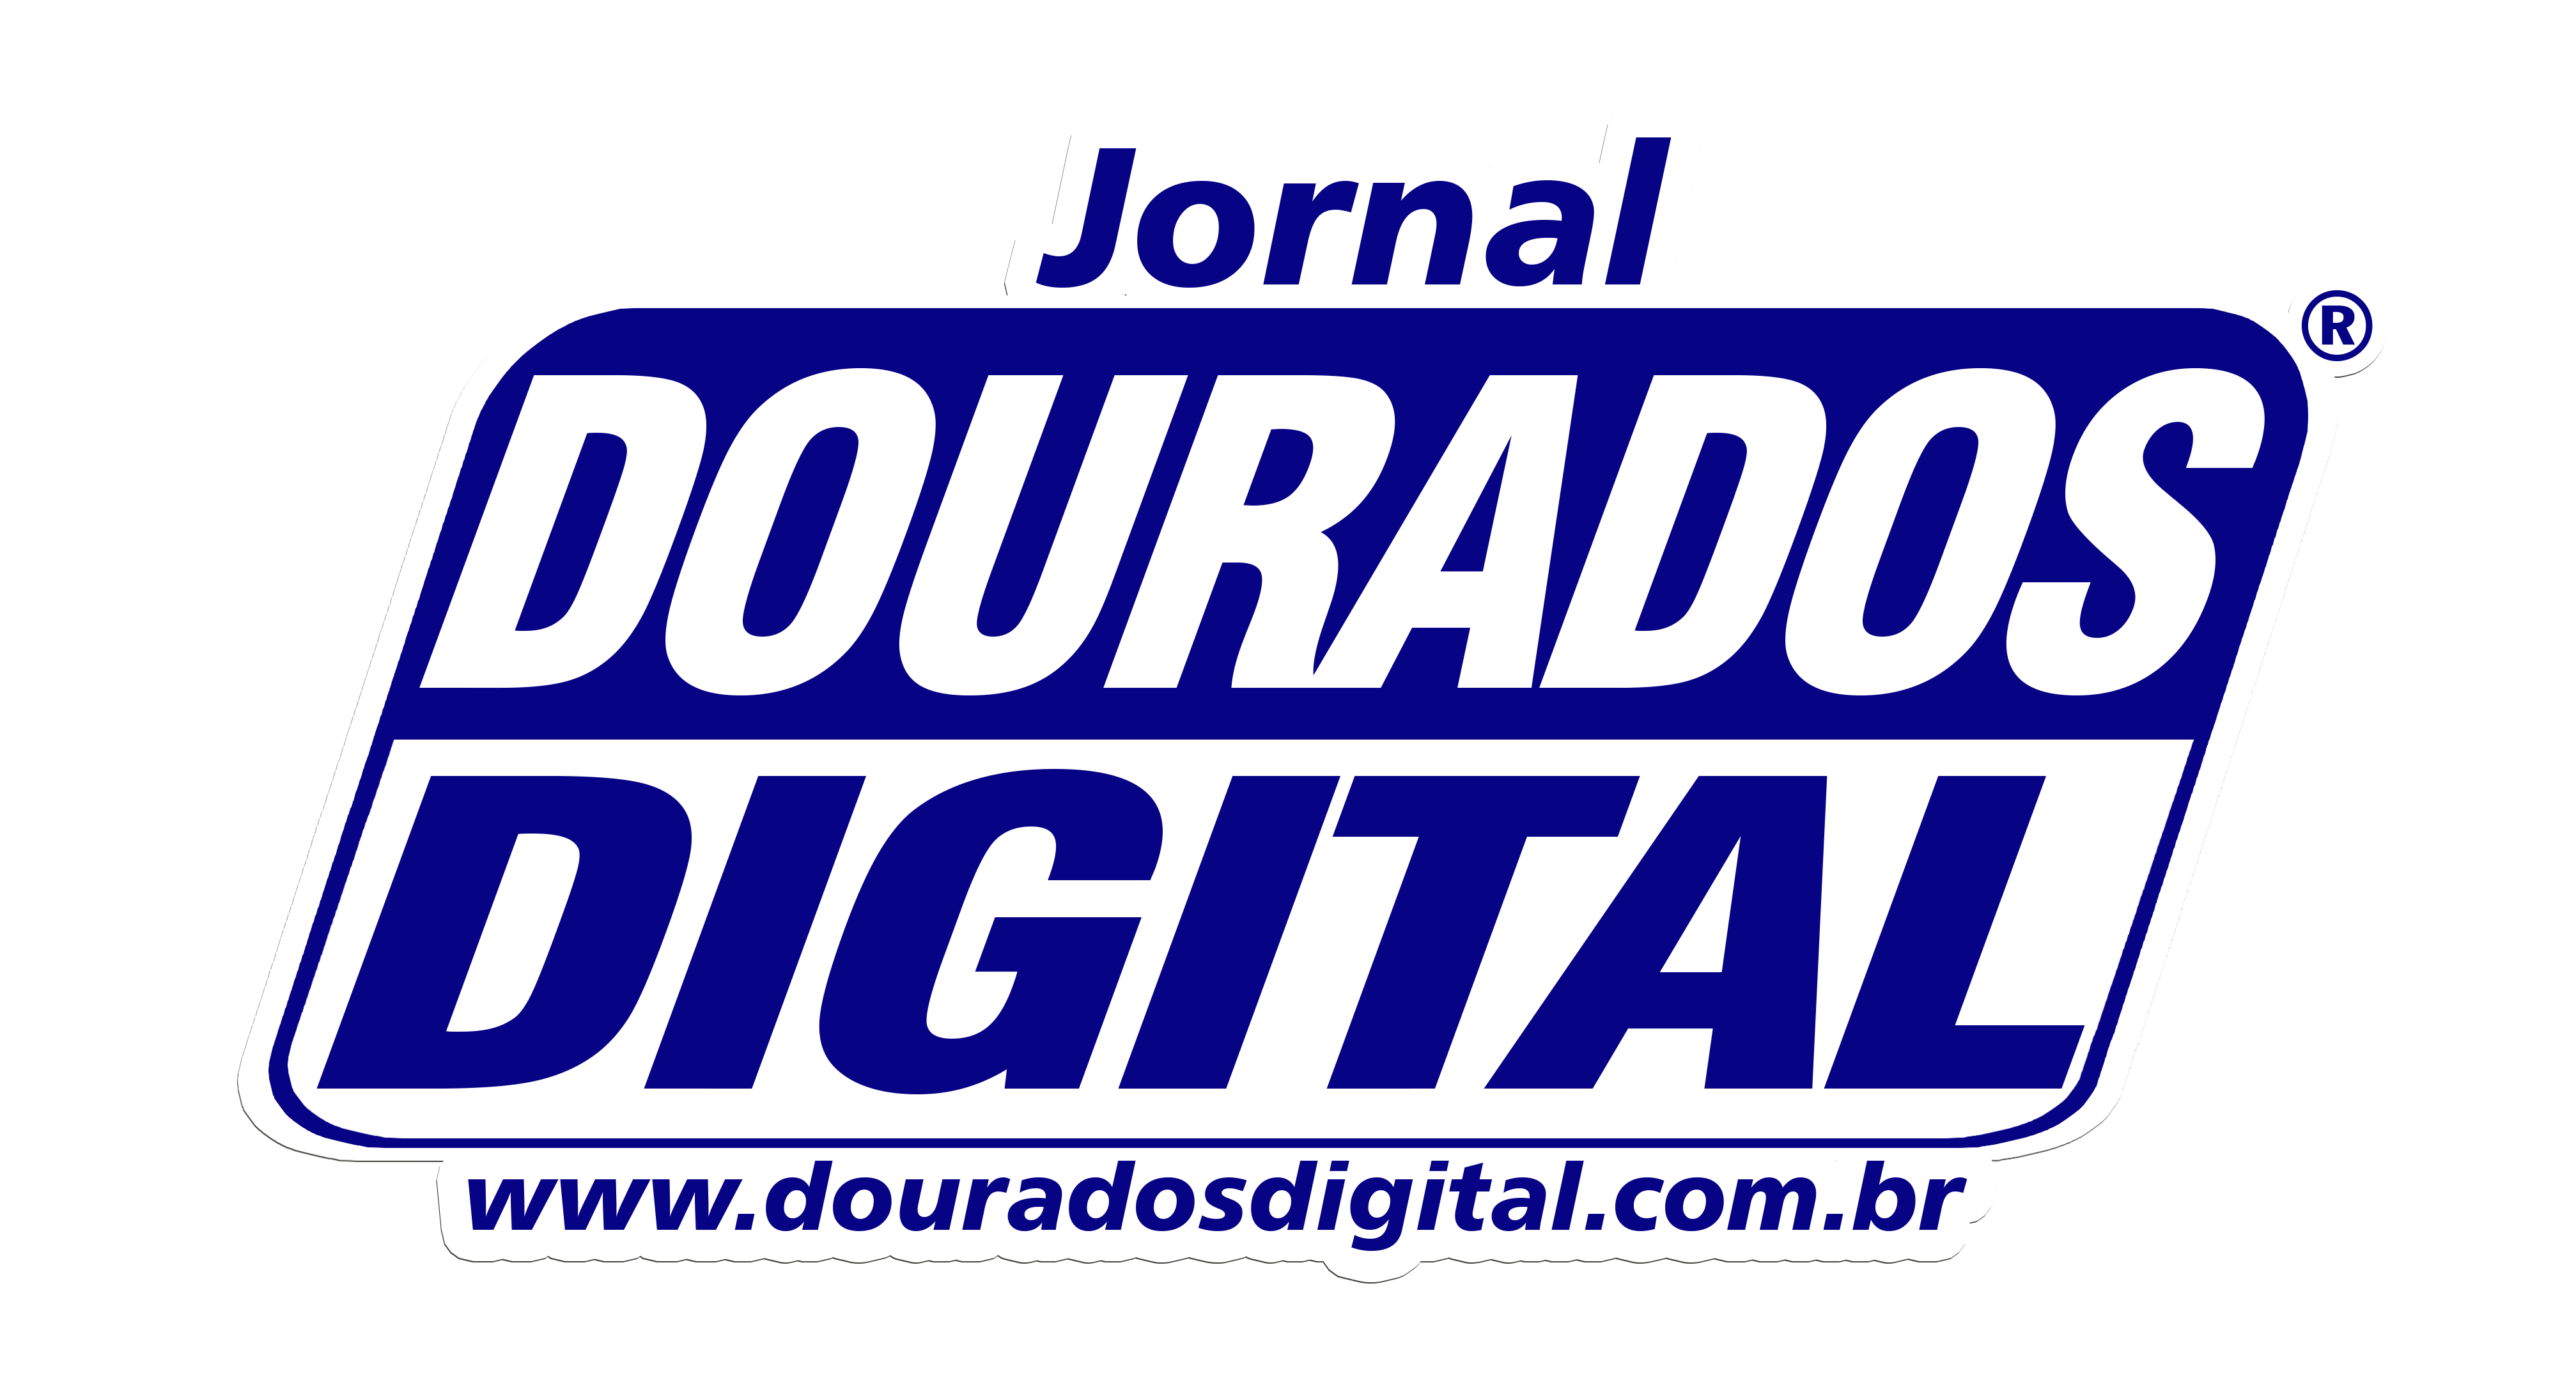 Jornal Dourados Digital�